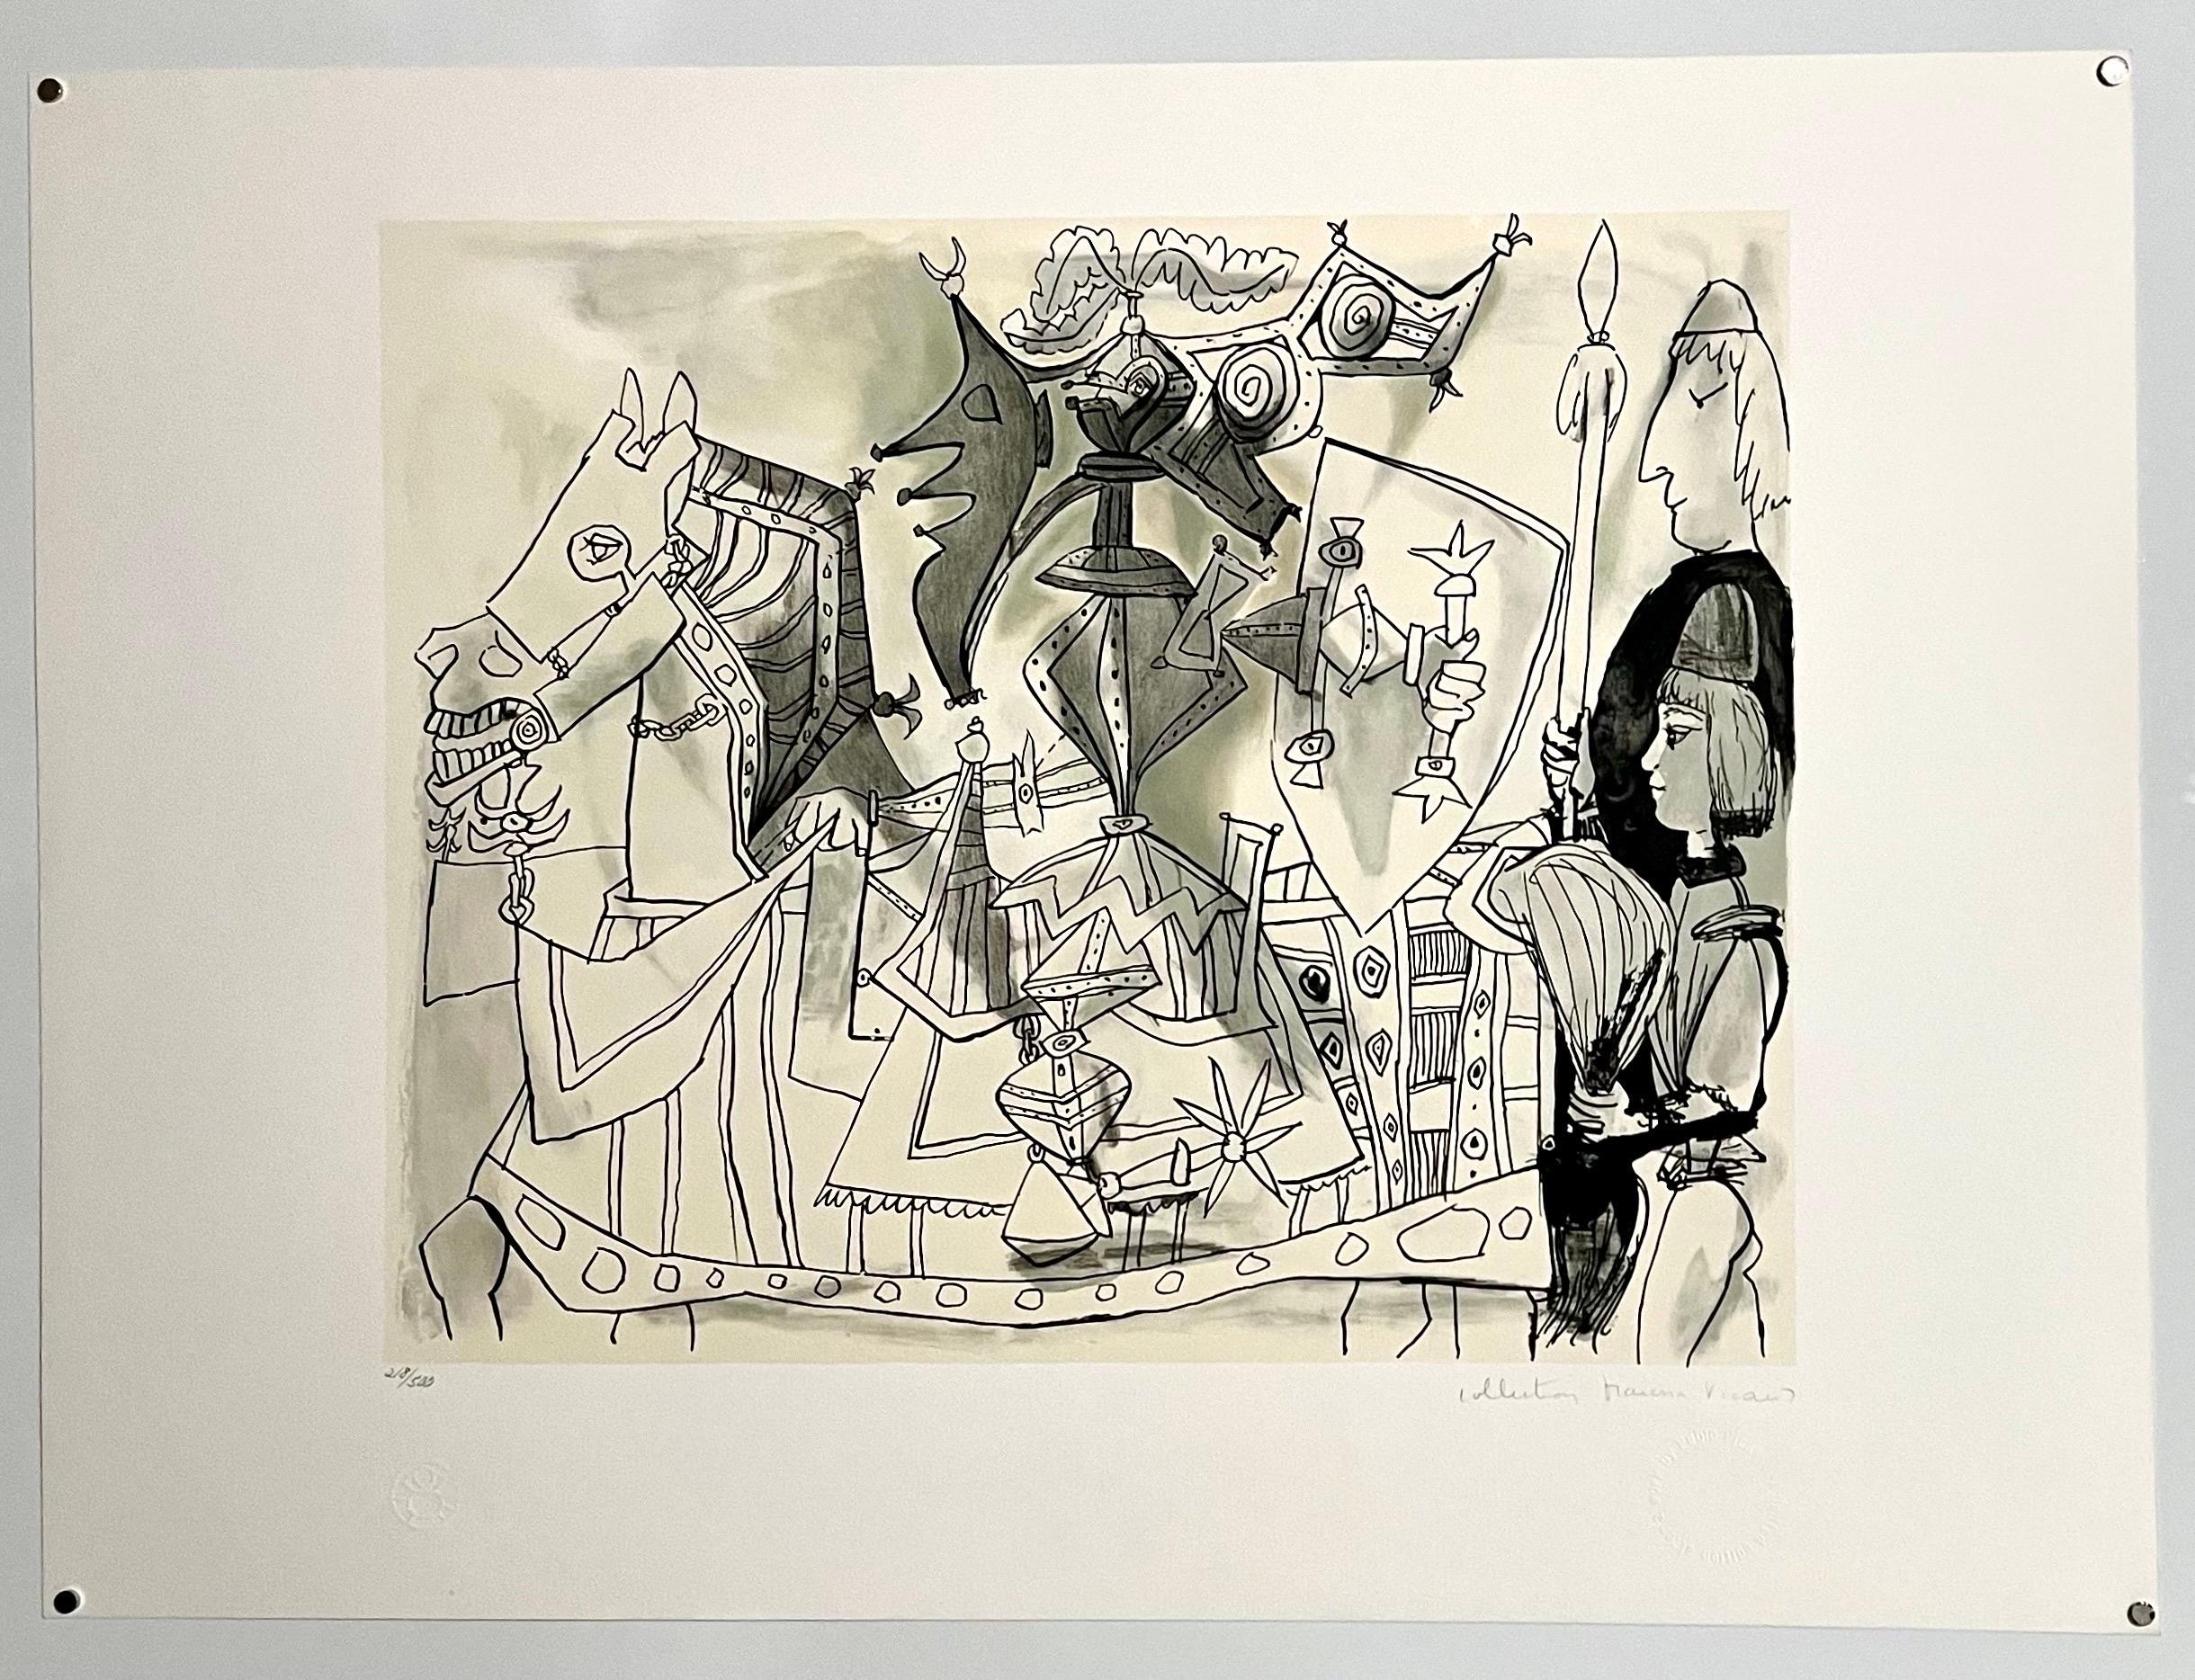 Nachlass Pablo Picasso, handsignierte kubistische abstrakte Lithographie Ritter, Rüstung, Pferd – Print von (after) Pablo Picasso